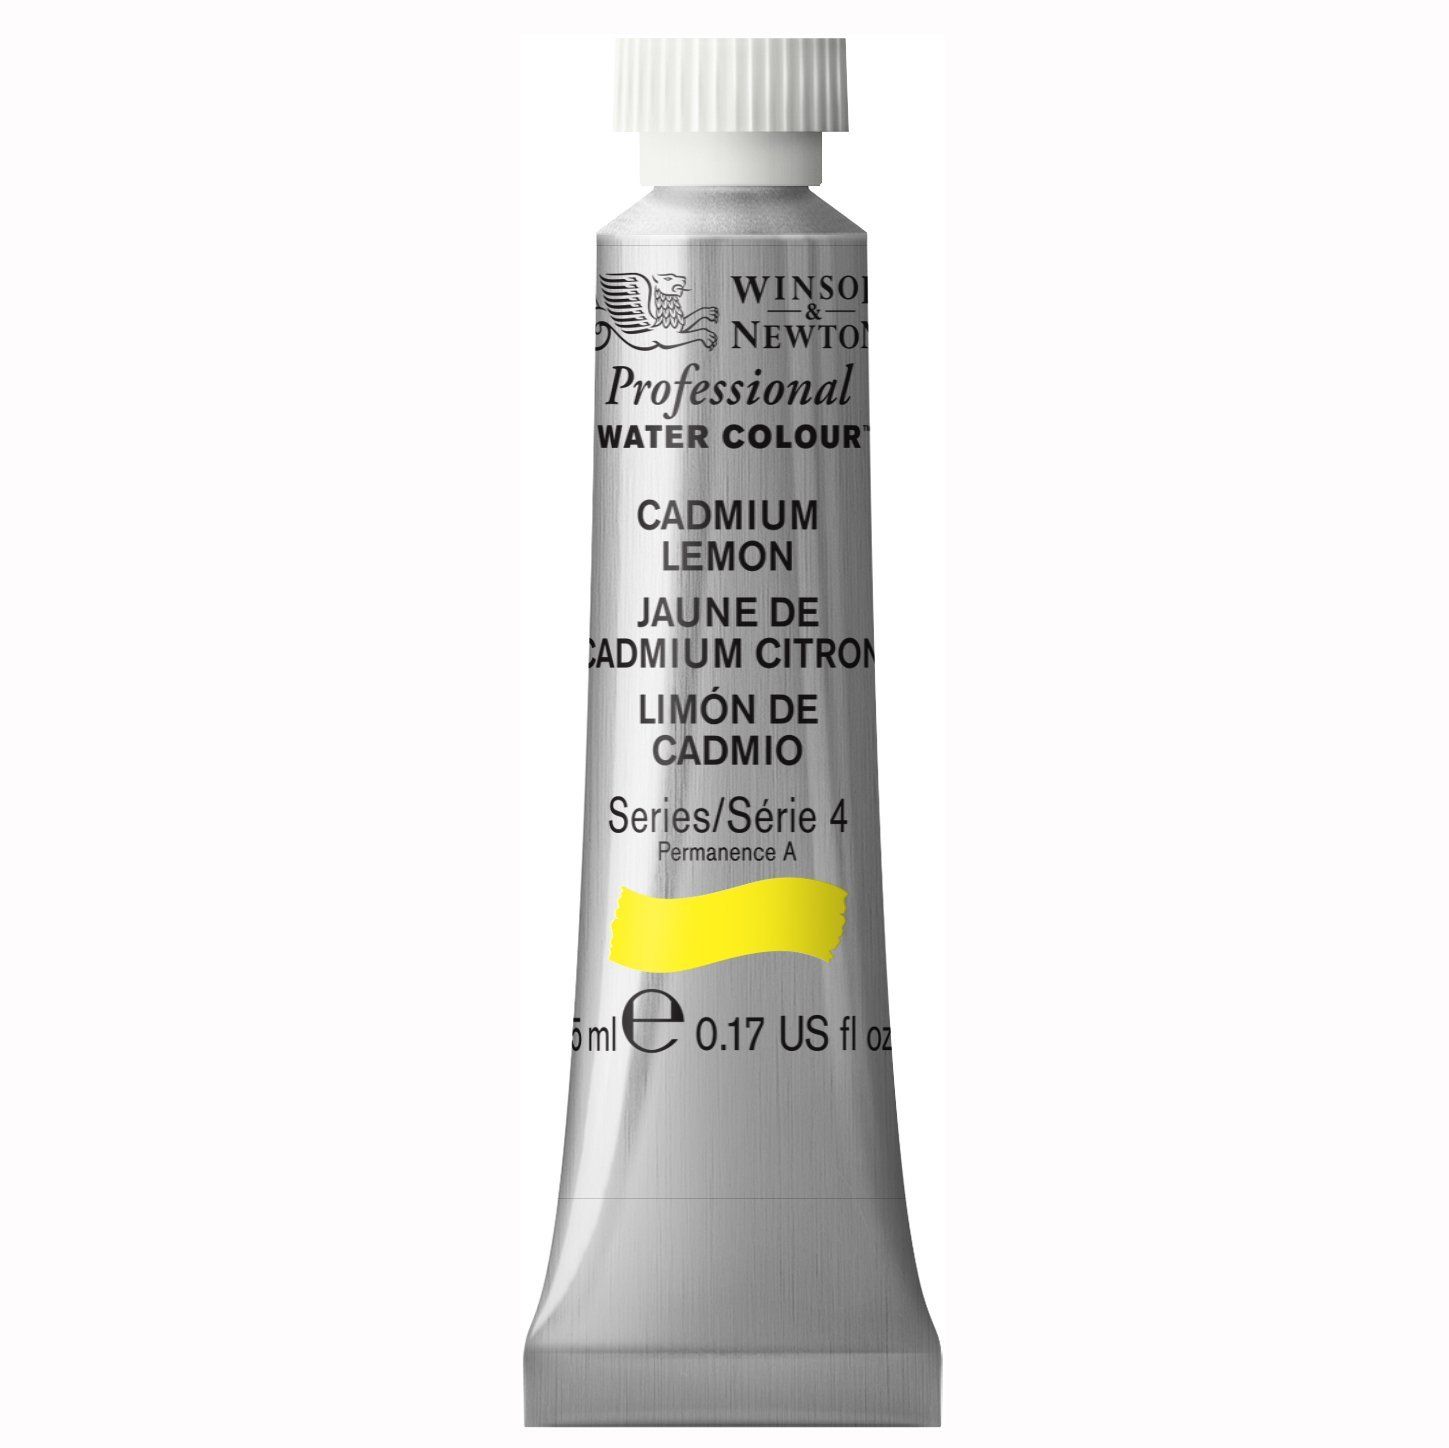 Winsor & Newton Watercolour Paint - Cadmium Lemon 5ml